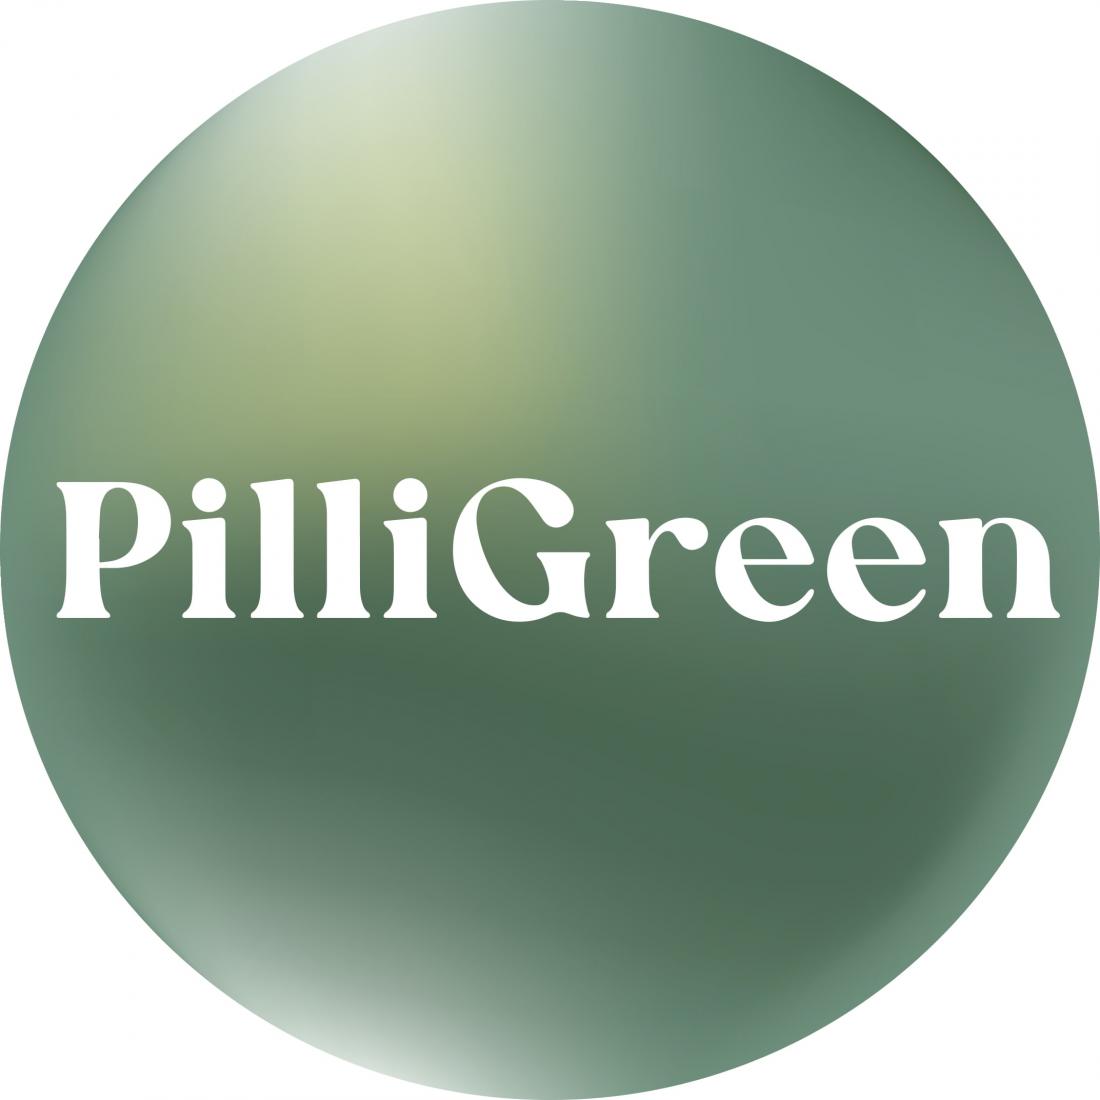 Подписка на горячие и холодные напитки за 19,90 р/30 дней в кофейне "PilliGreen"